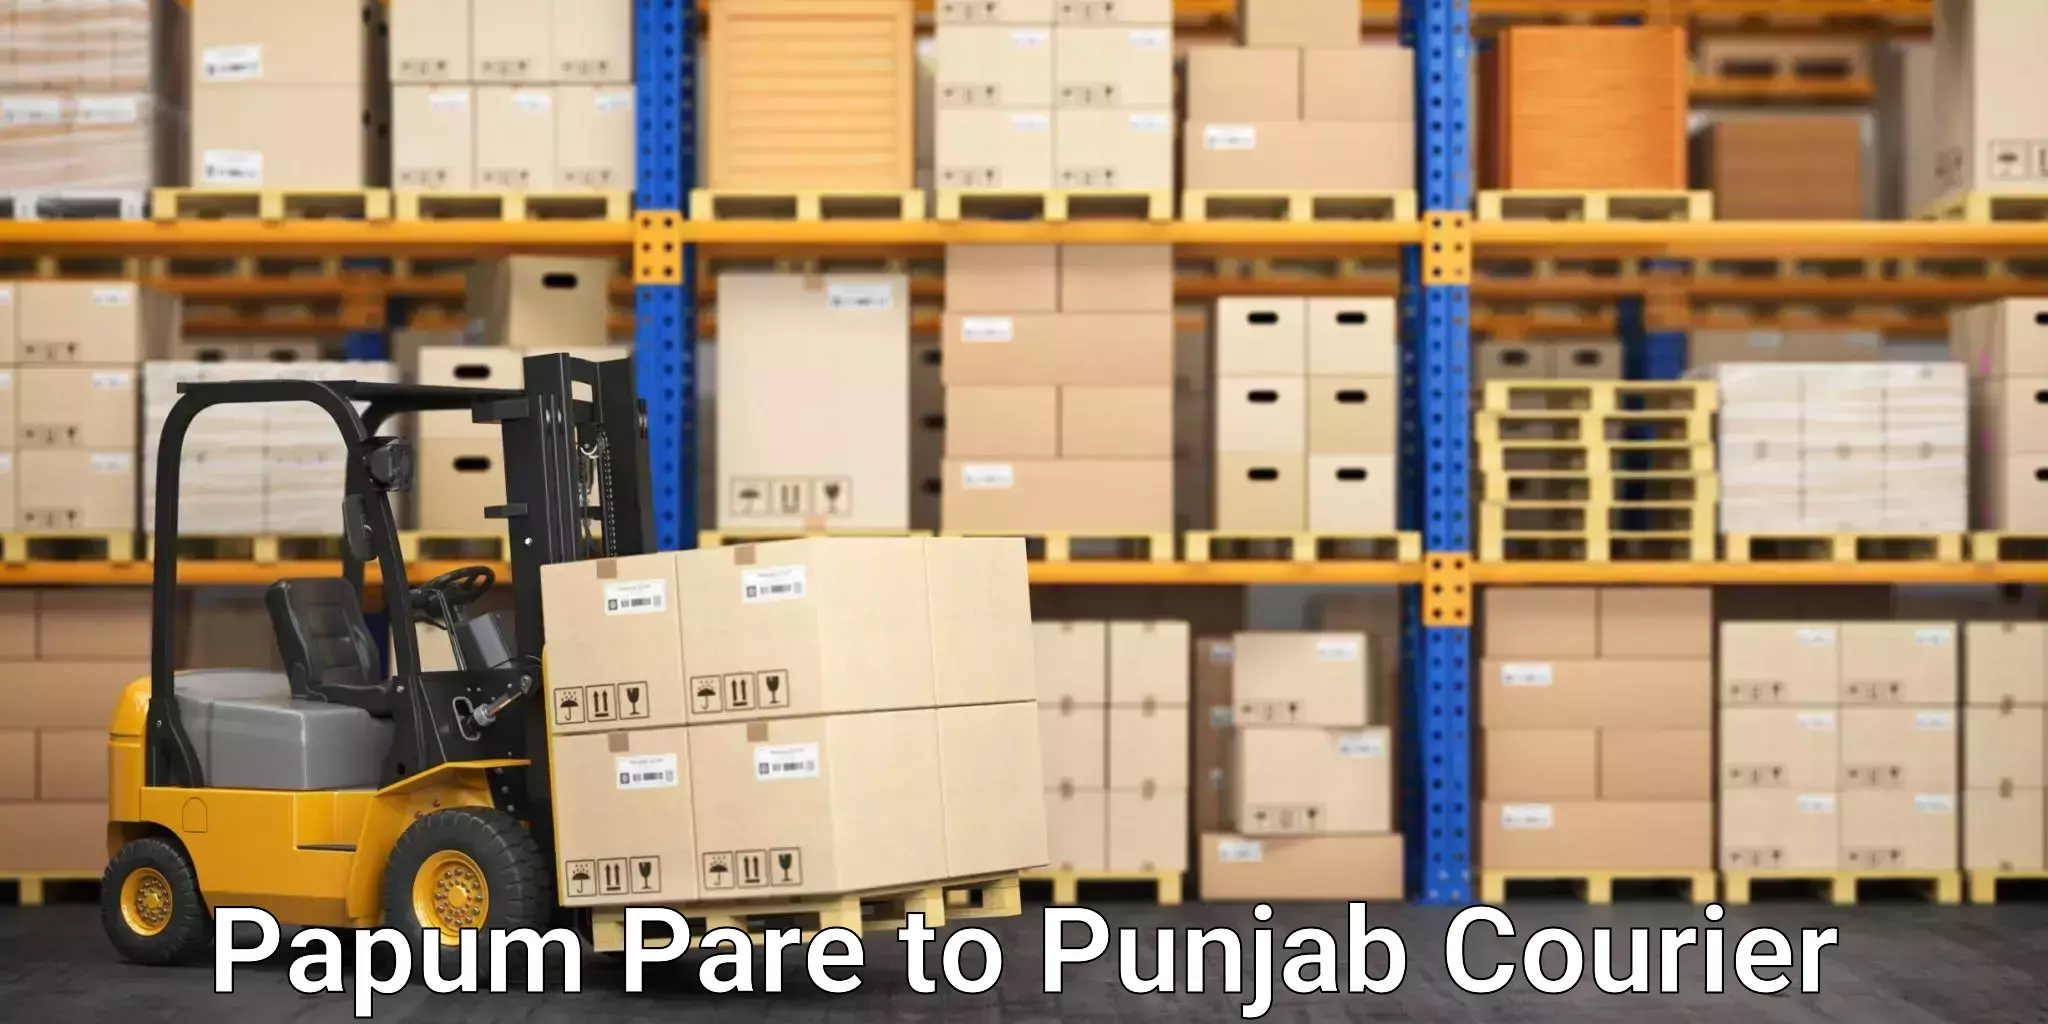 Affordable parcel rates Papum Pare to Punjab